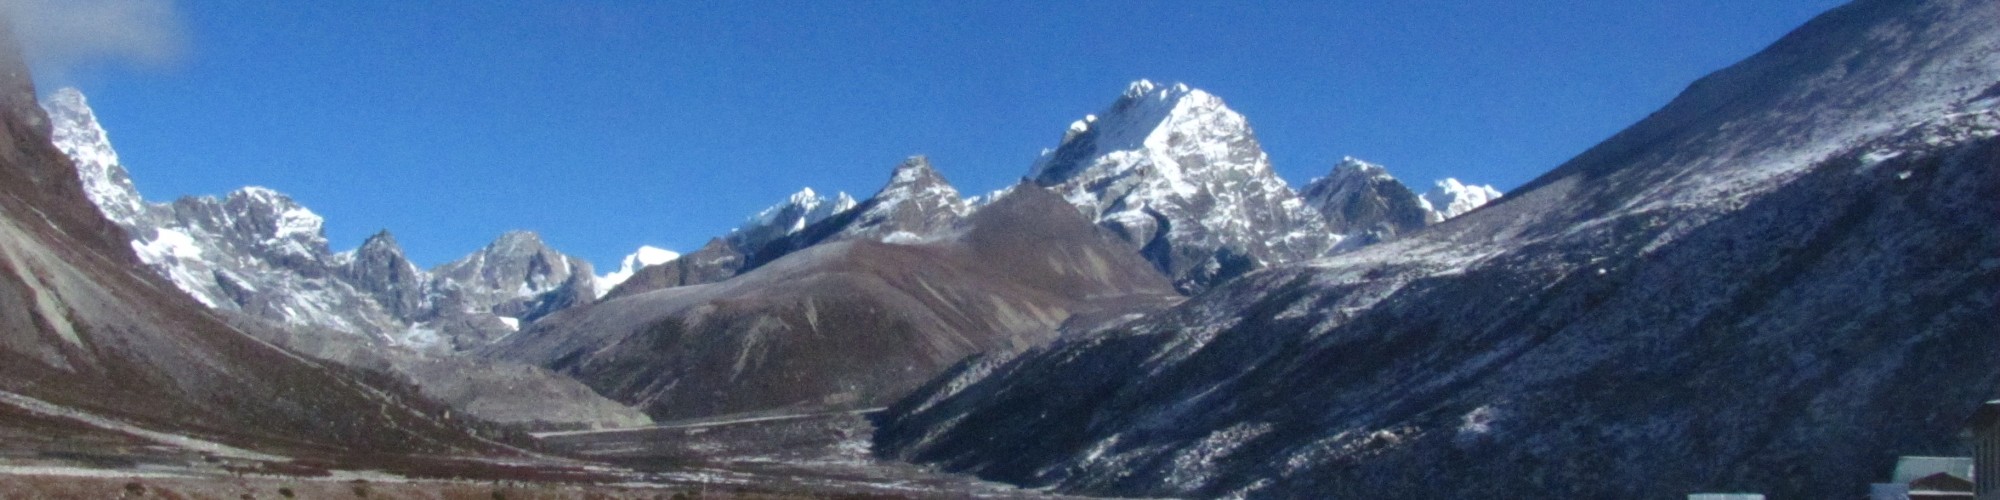 Pheriche, Nepal